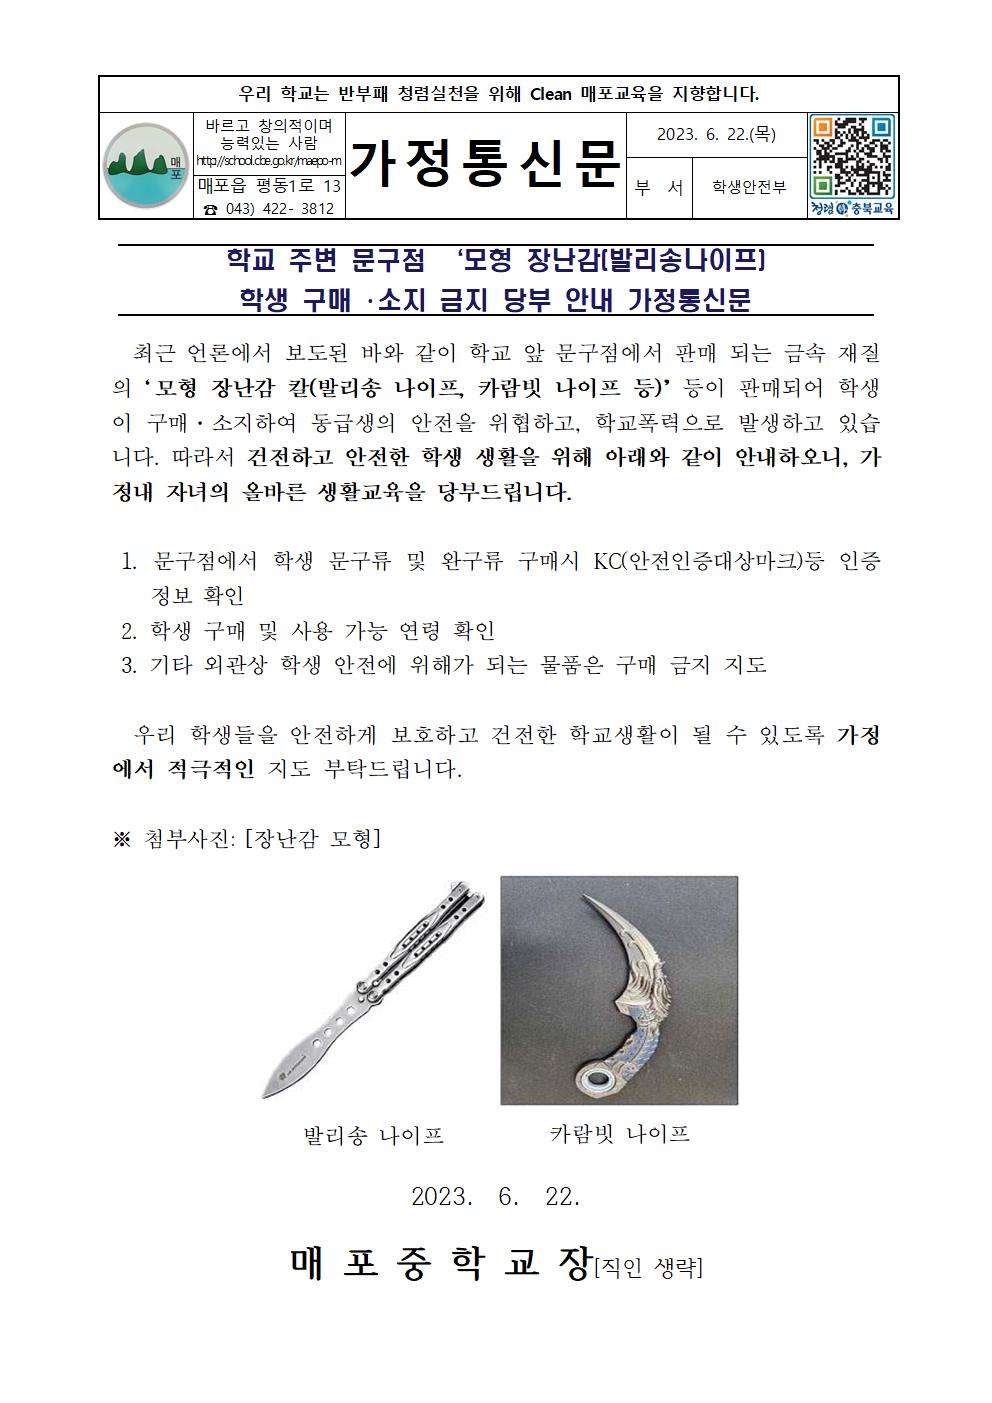 모형 장난감(발리송 나이프) 학생 구매 소지 금지 당부 안내 가정통신문001